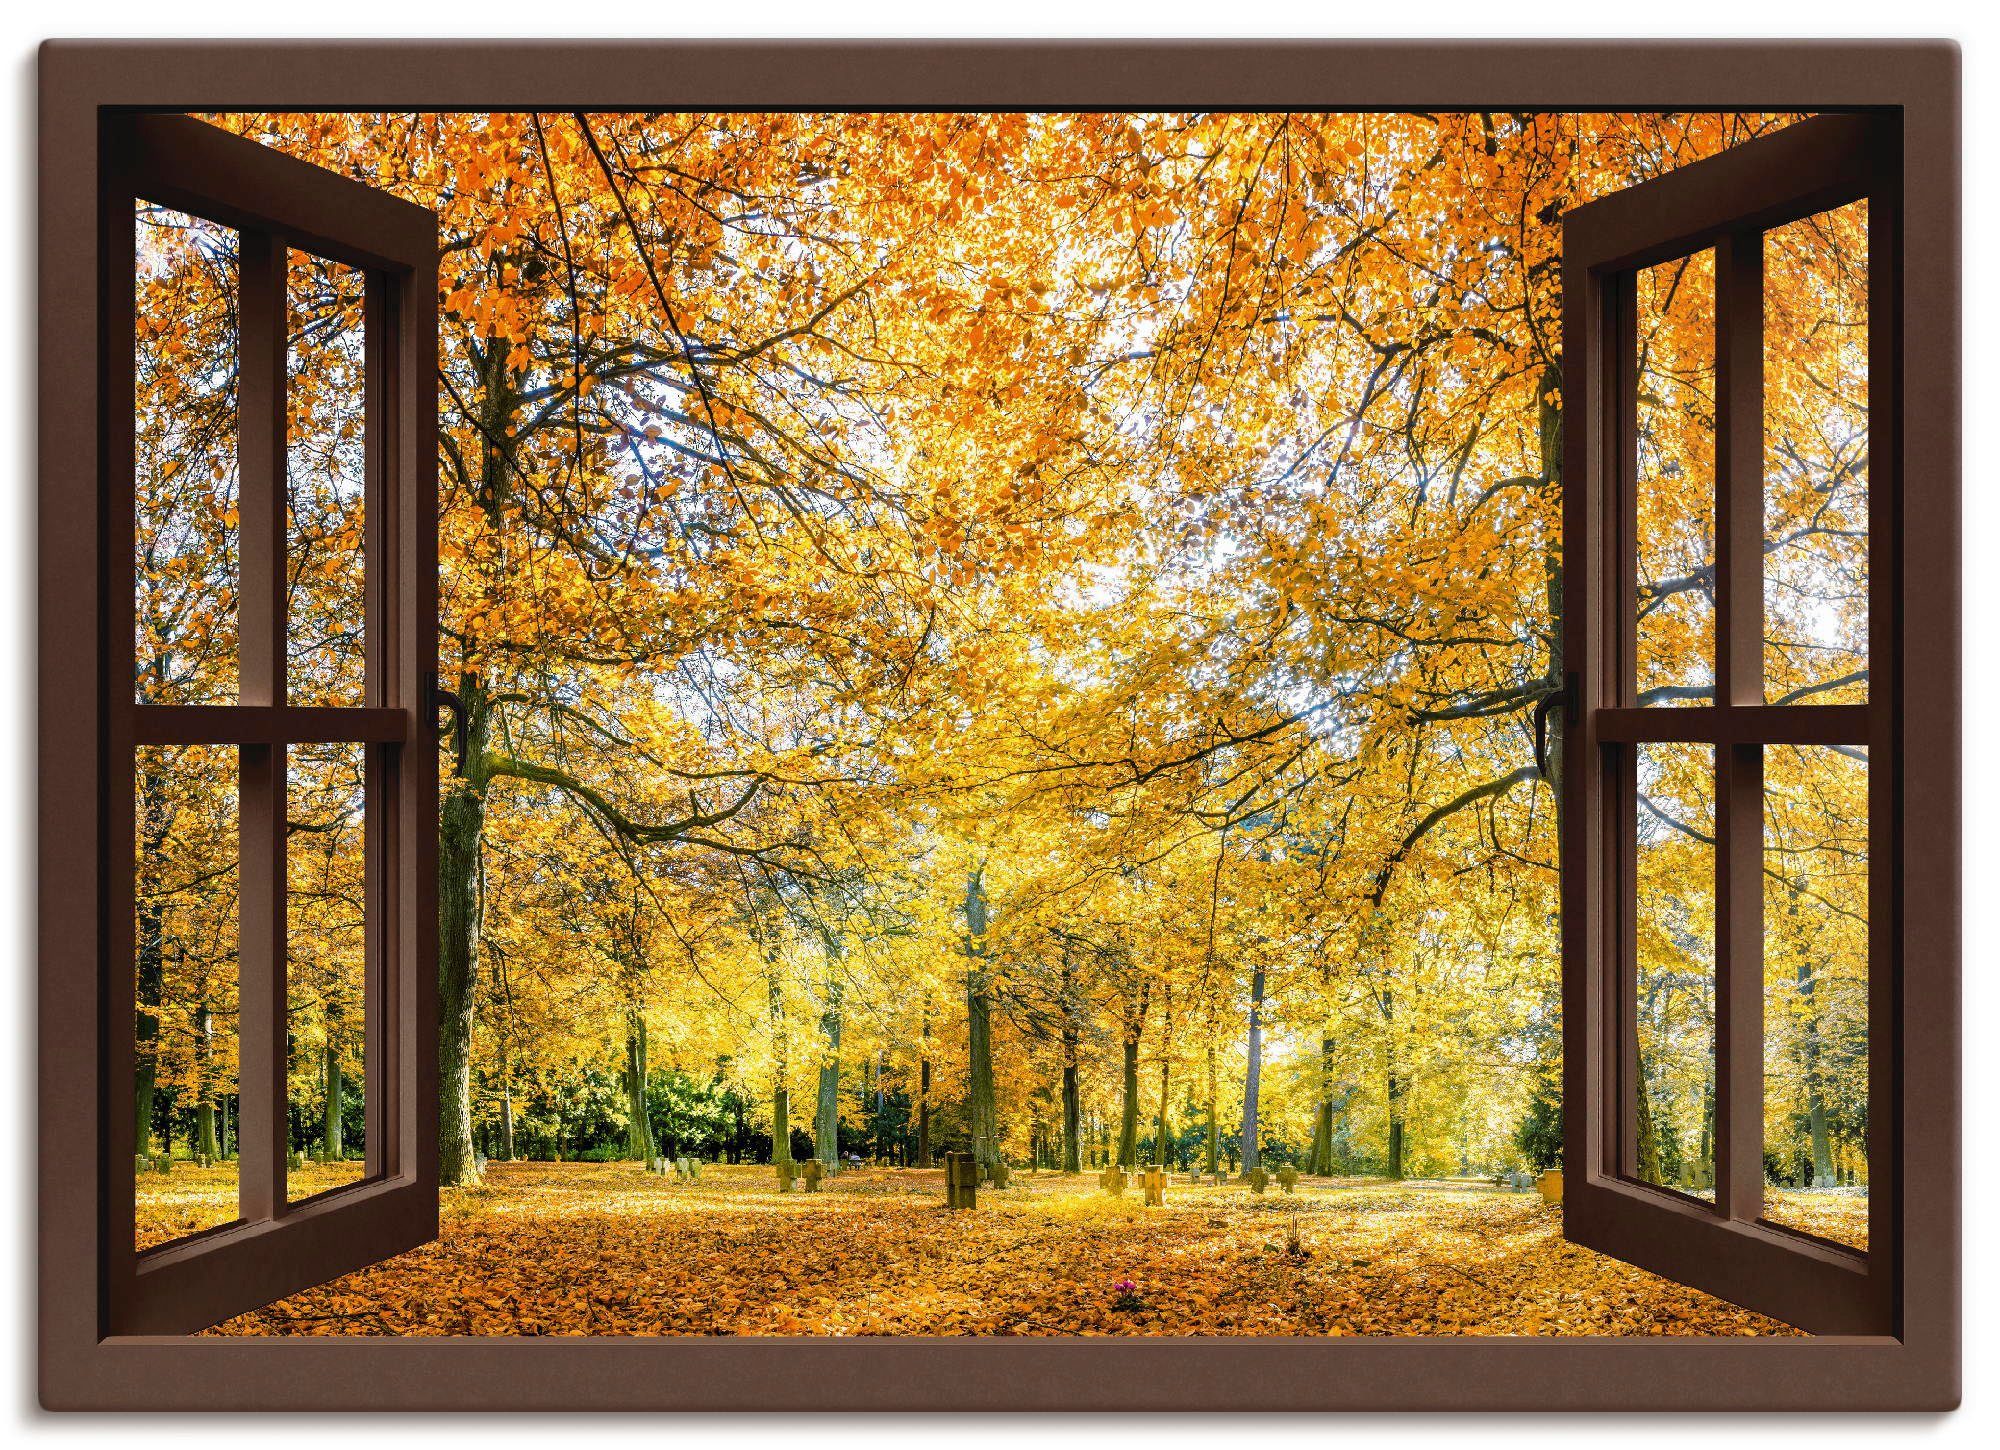 Artland Artprint Blik uit het venster - herfstbos panorama in vele afmetingen & productsoorten -artprint op linnen, poster, muursticker / wandfolie ook geschikt voor de badkamer (1